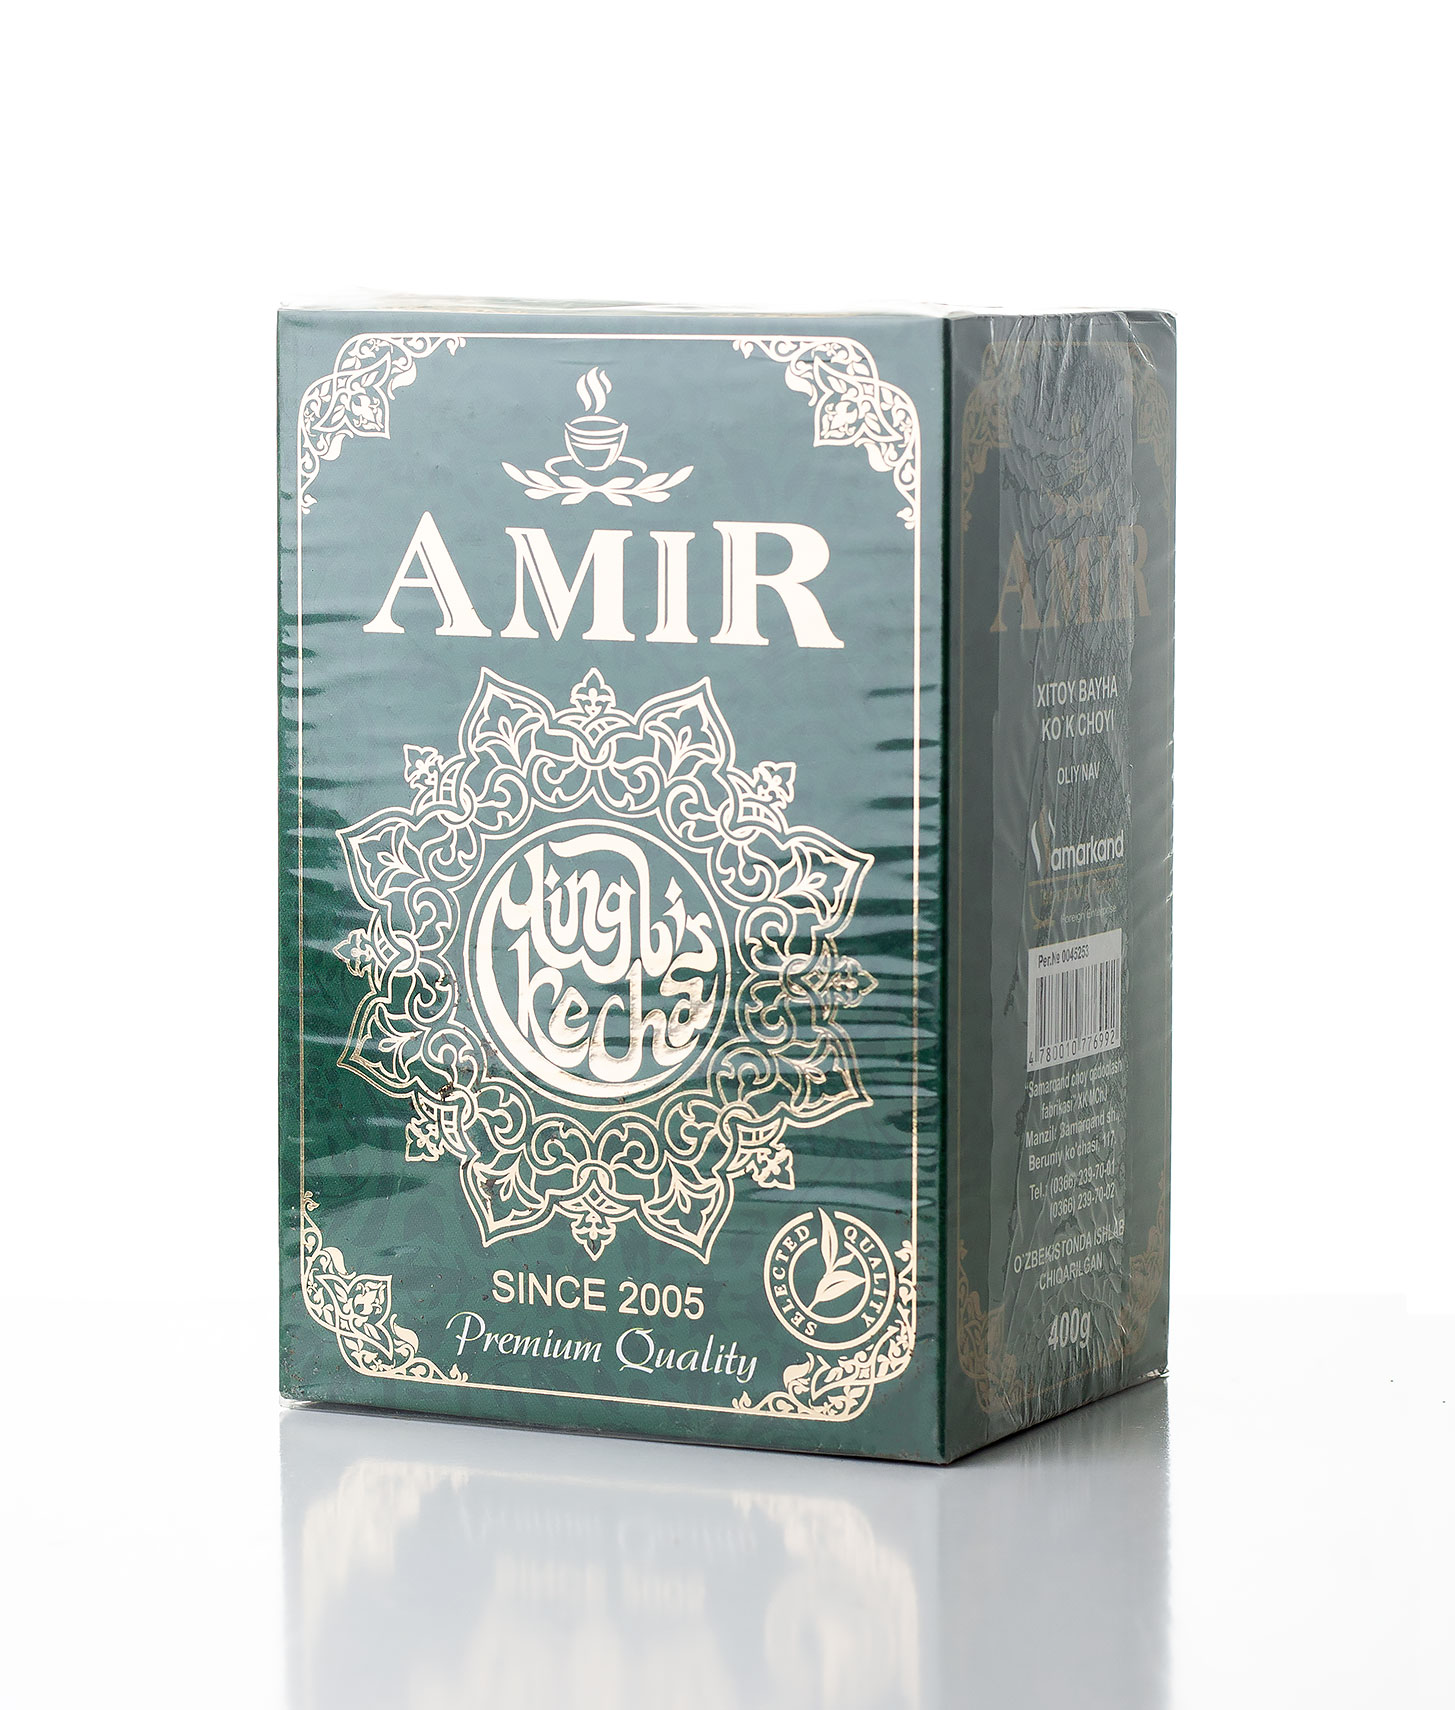 Чай зеленый Amir Ming bir kecha твёрдая упаковка, 400 гр.